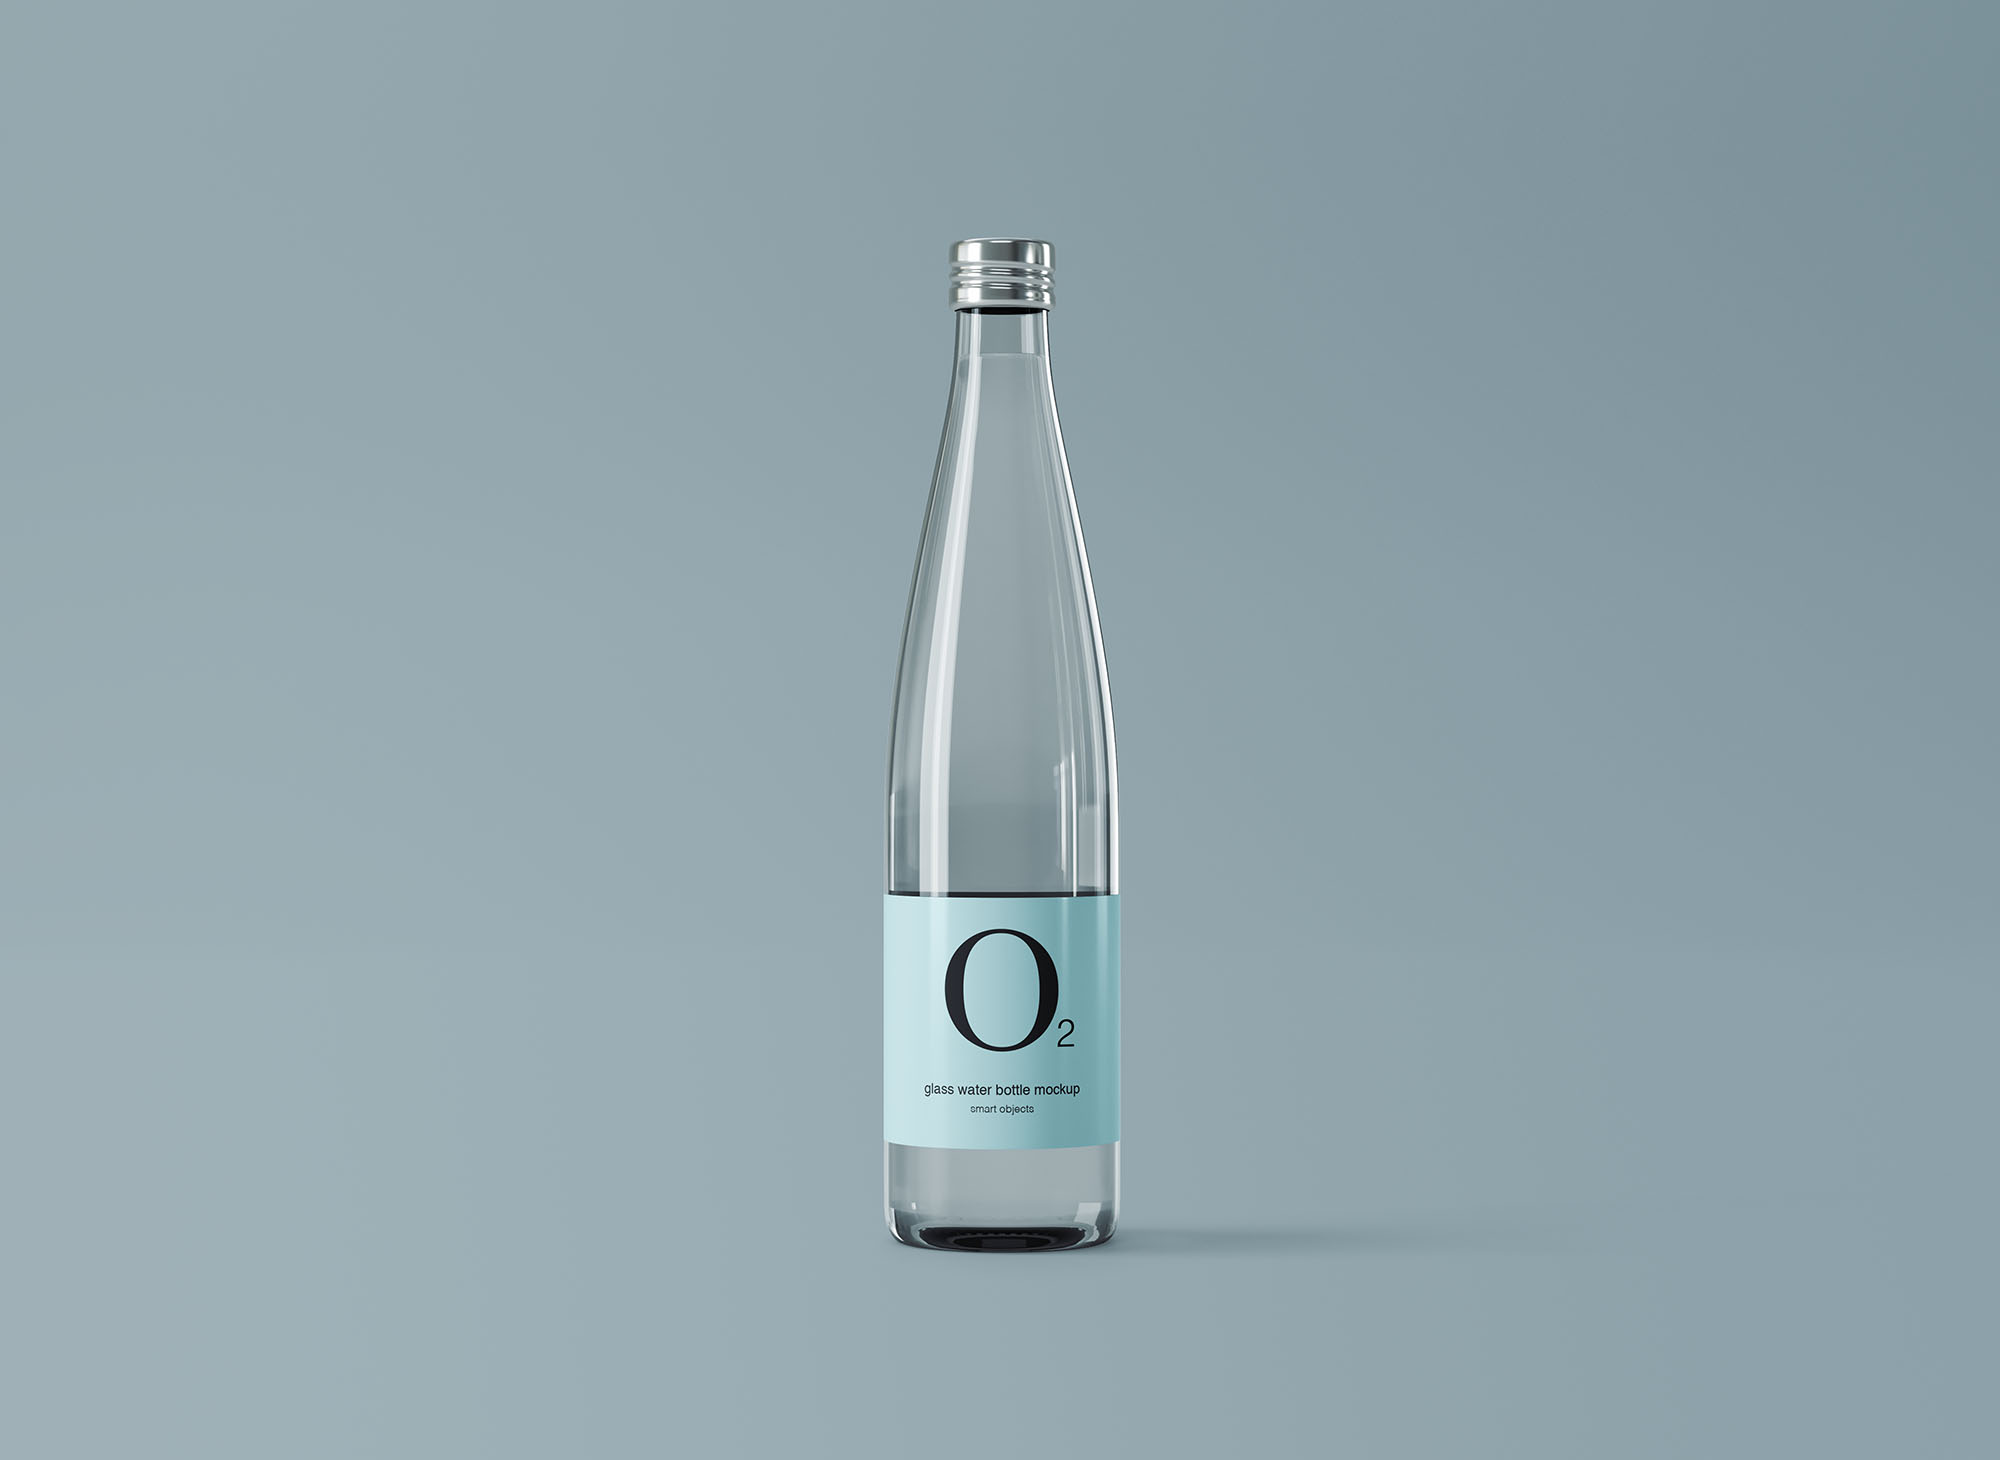 极简设计风格玻璃纯净水矿泉水瓶外观设计图素材库精选 Minimal Glass Water Bottle Mockup插图